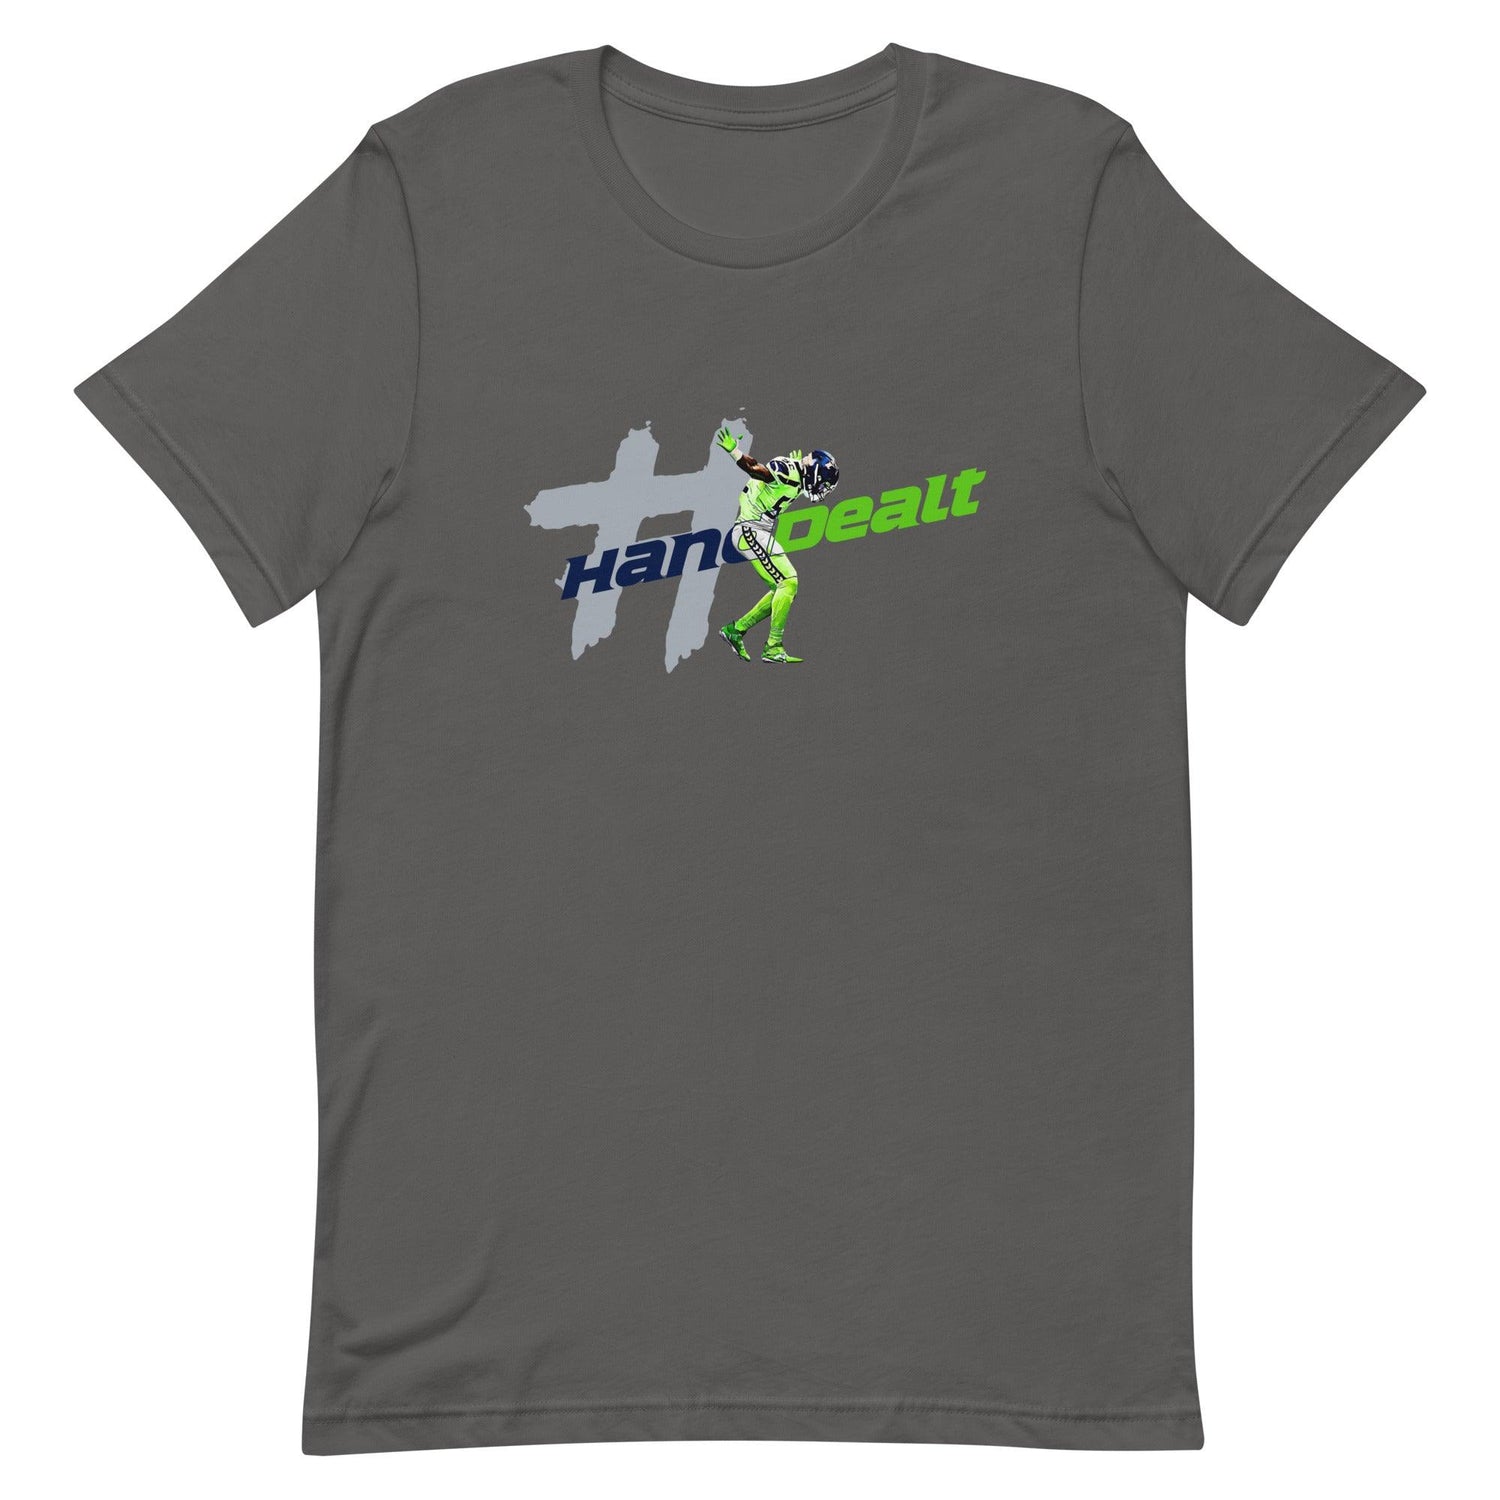 Darrell Taylor Jr. "#HandDealt" t-shirt - Fan Arch